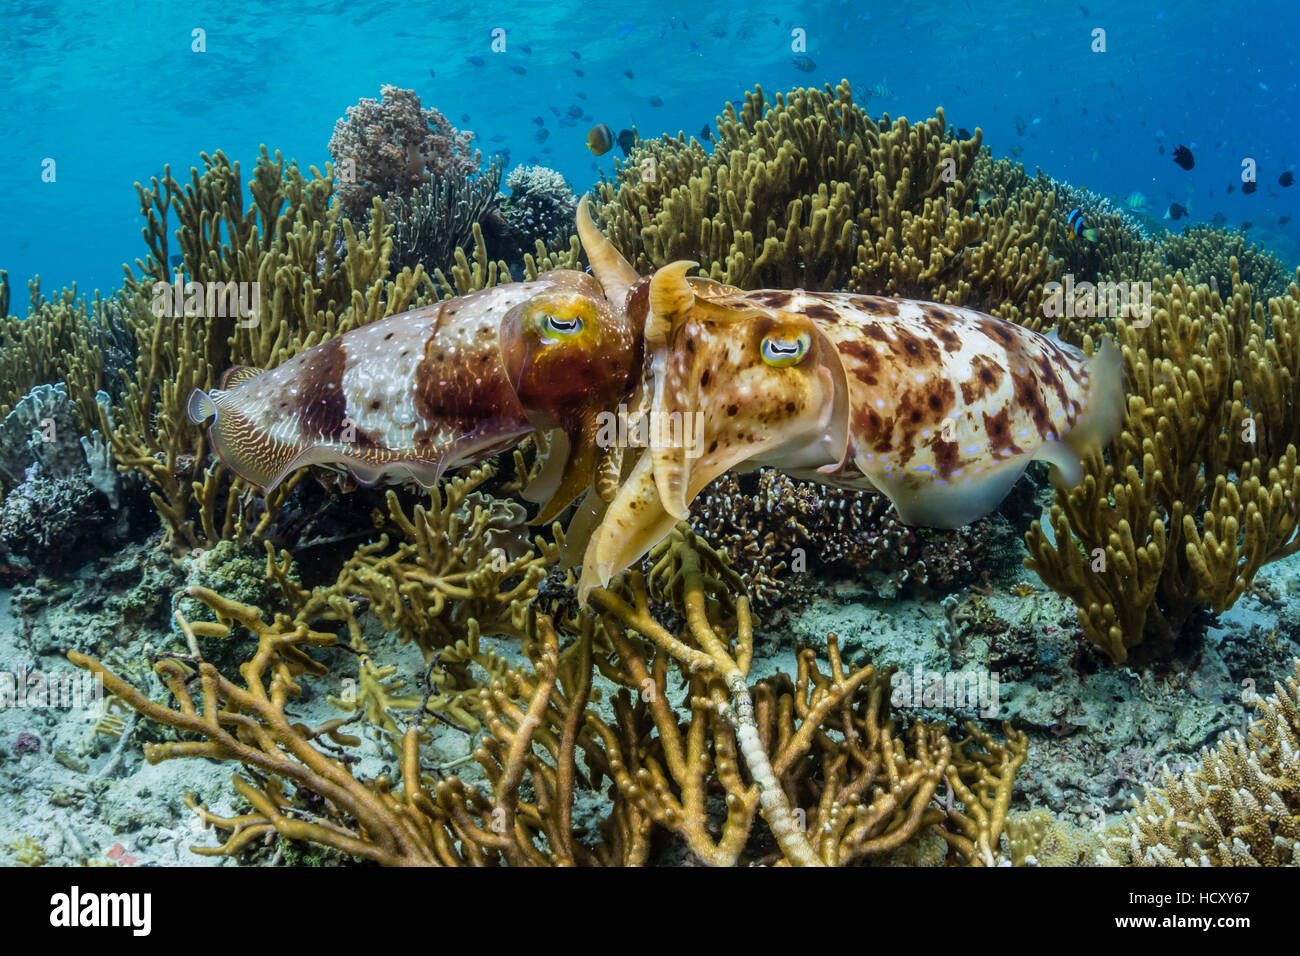 Adult broadclub cuttlefish (Sepia latimanus) mating on Sebayur Island, Flores Sea, Indonesia Stock Photo